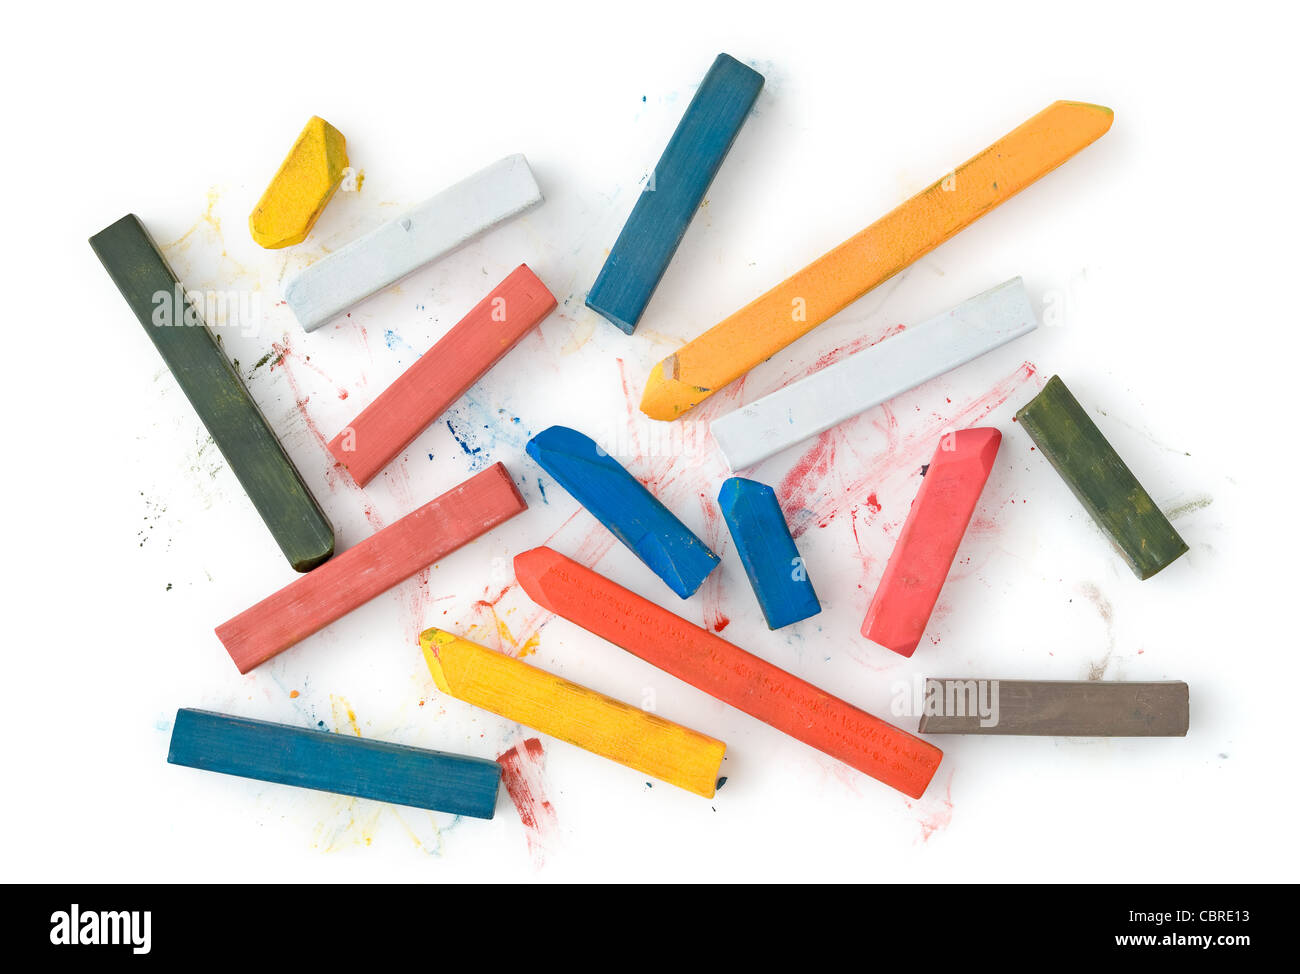 Art Supplies of Pastel Sticks on White Stock Photo